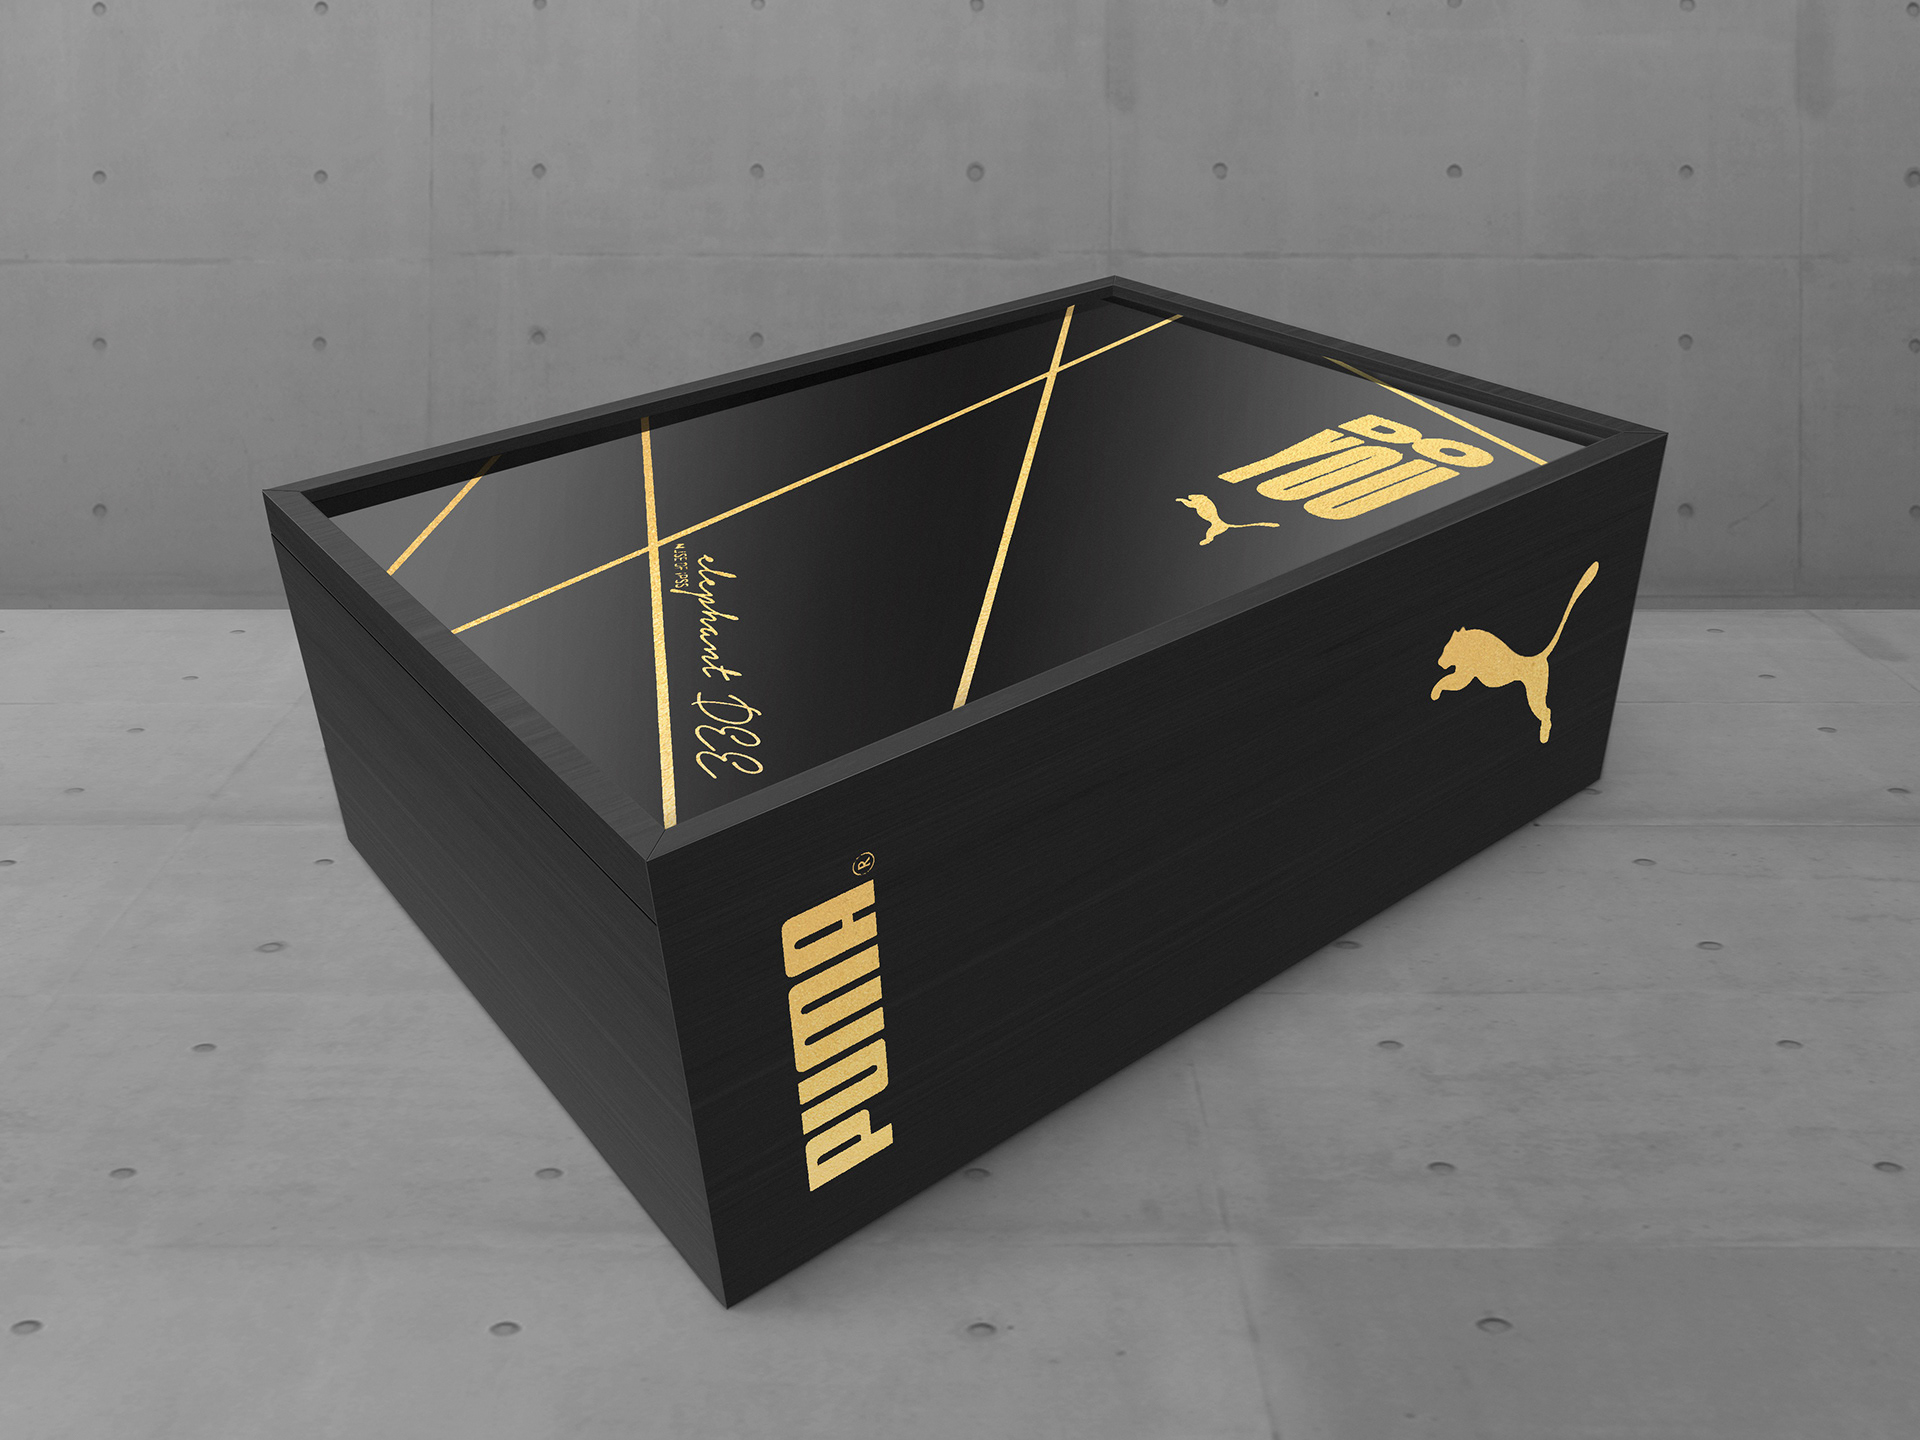 cuello Primer ministro Oportuno PUMA Shoe box packaging | Behance